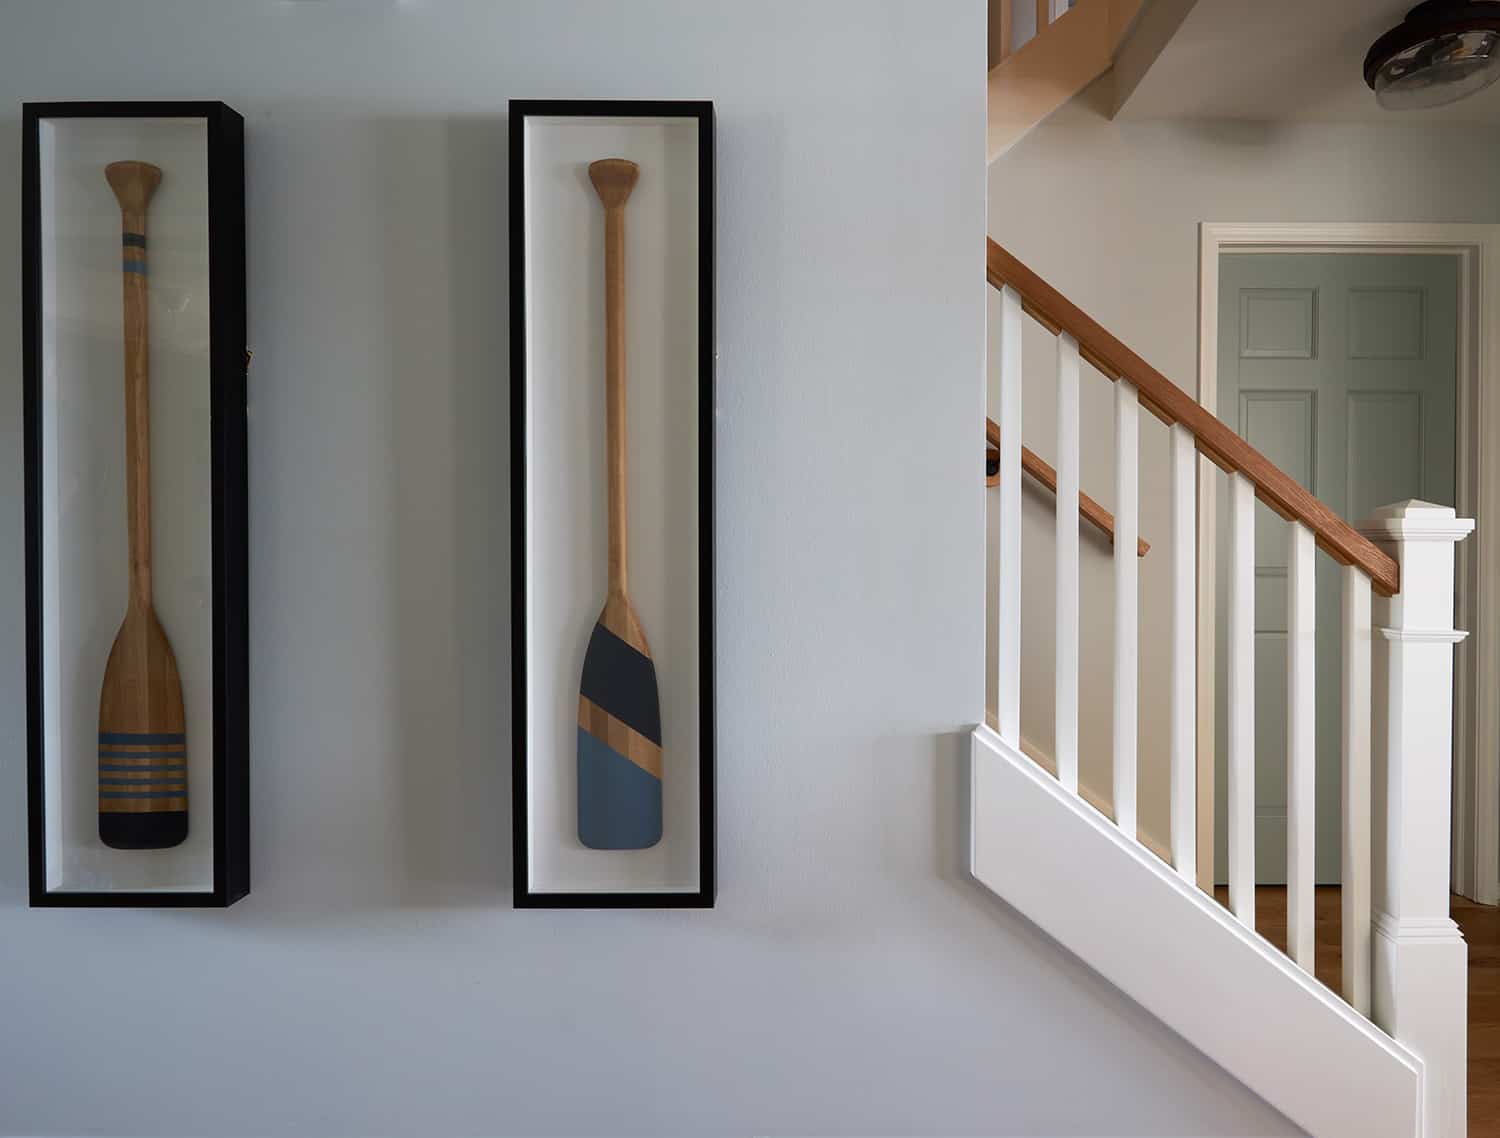 painted oars framed as wall art